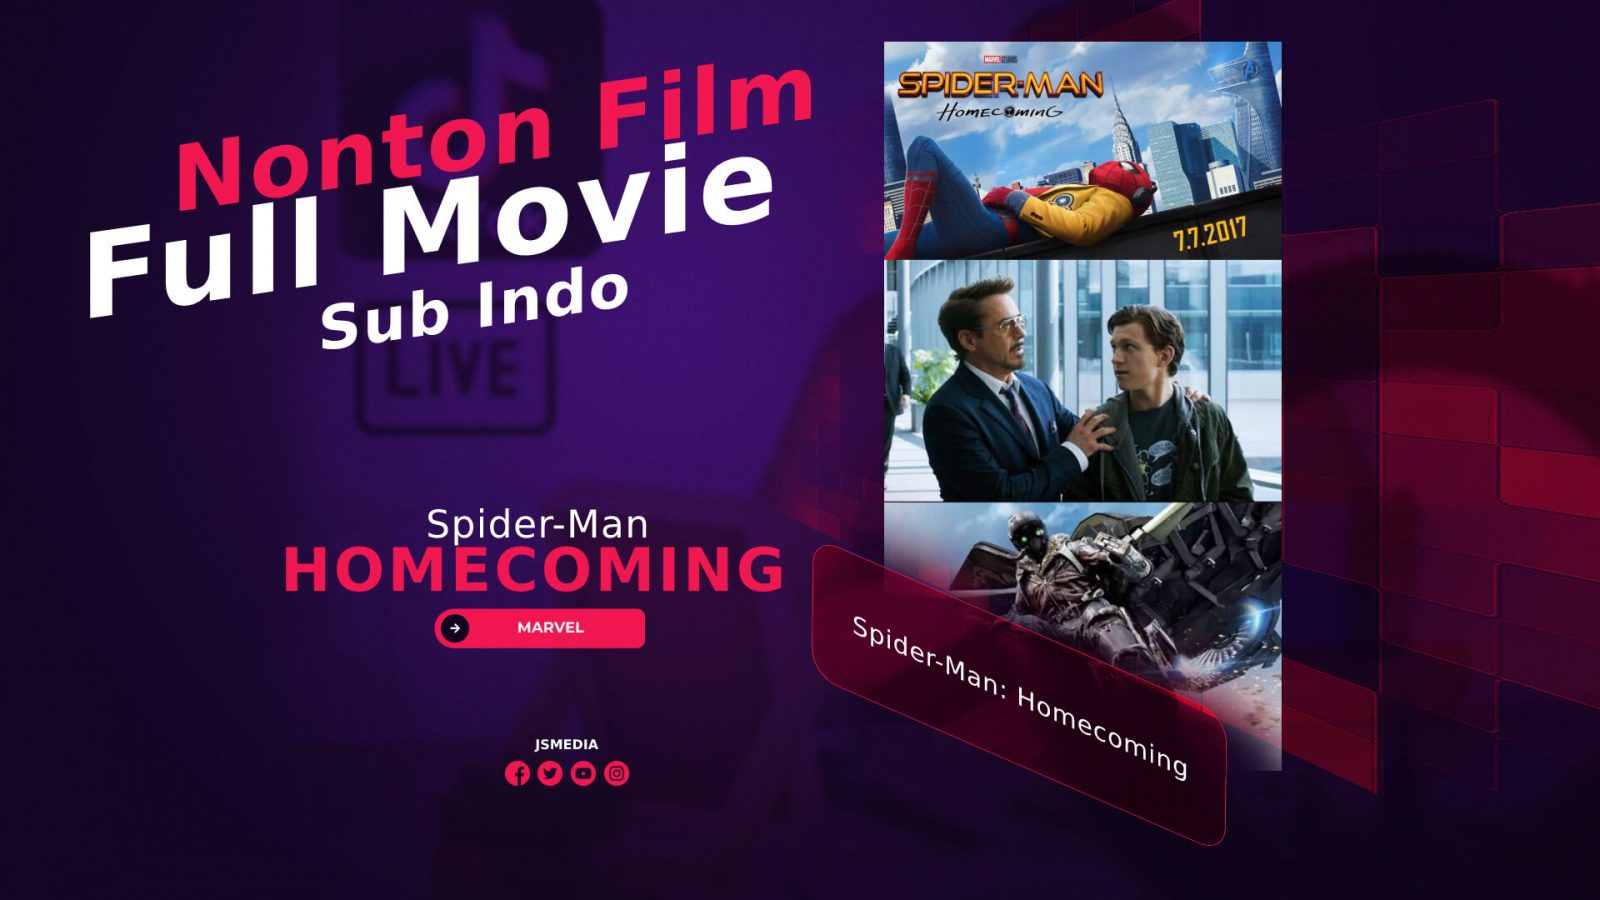 Nonton Film Spider-Man: Homecoming Full Movie Sub Indo